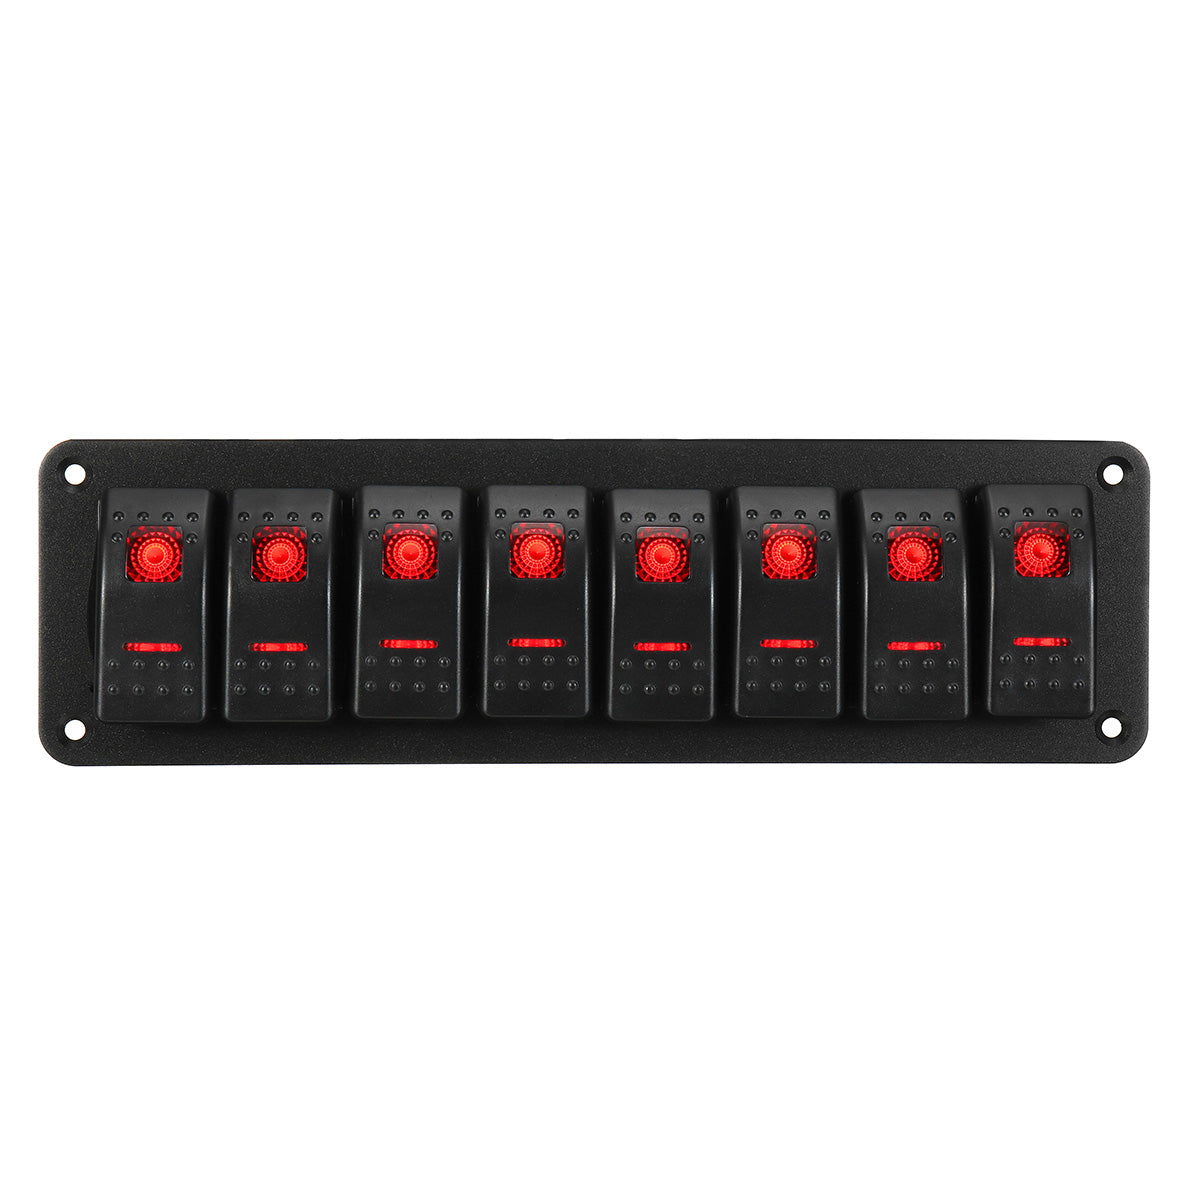 Orange Red 8 Gang LED Rocker Switch Panel Breaker Waterproof For Car Marine Boat